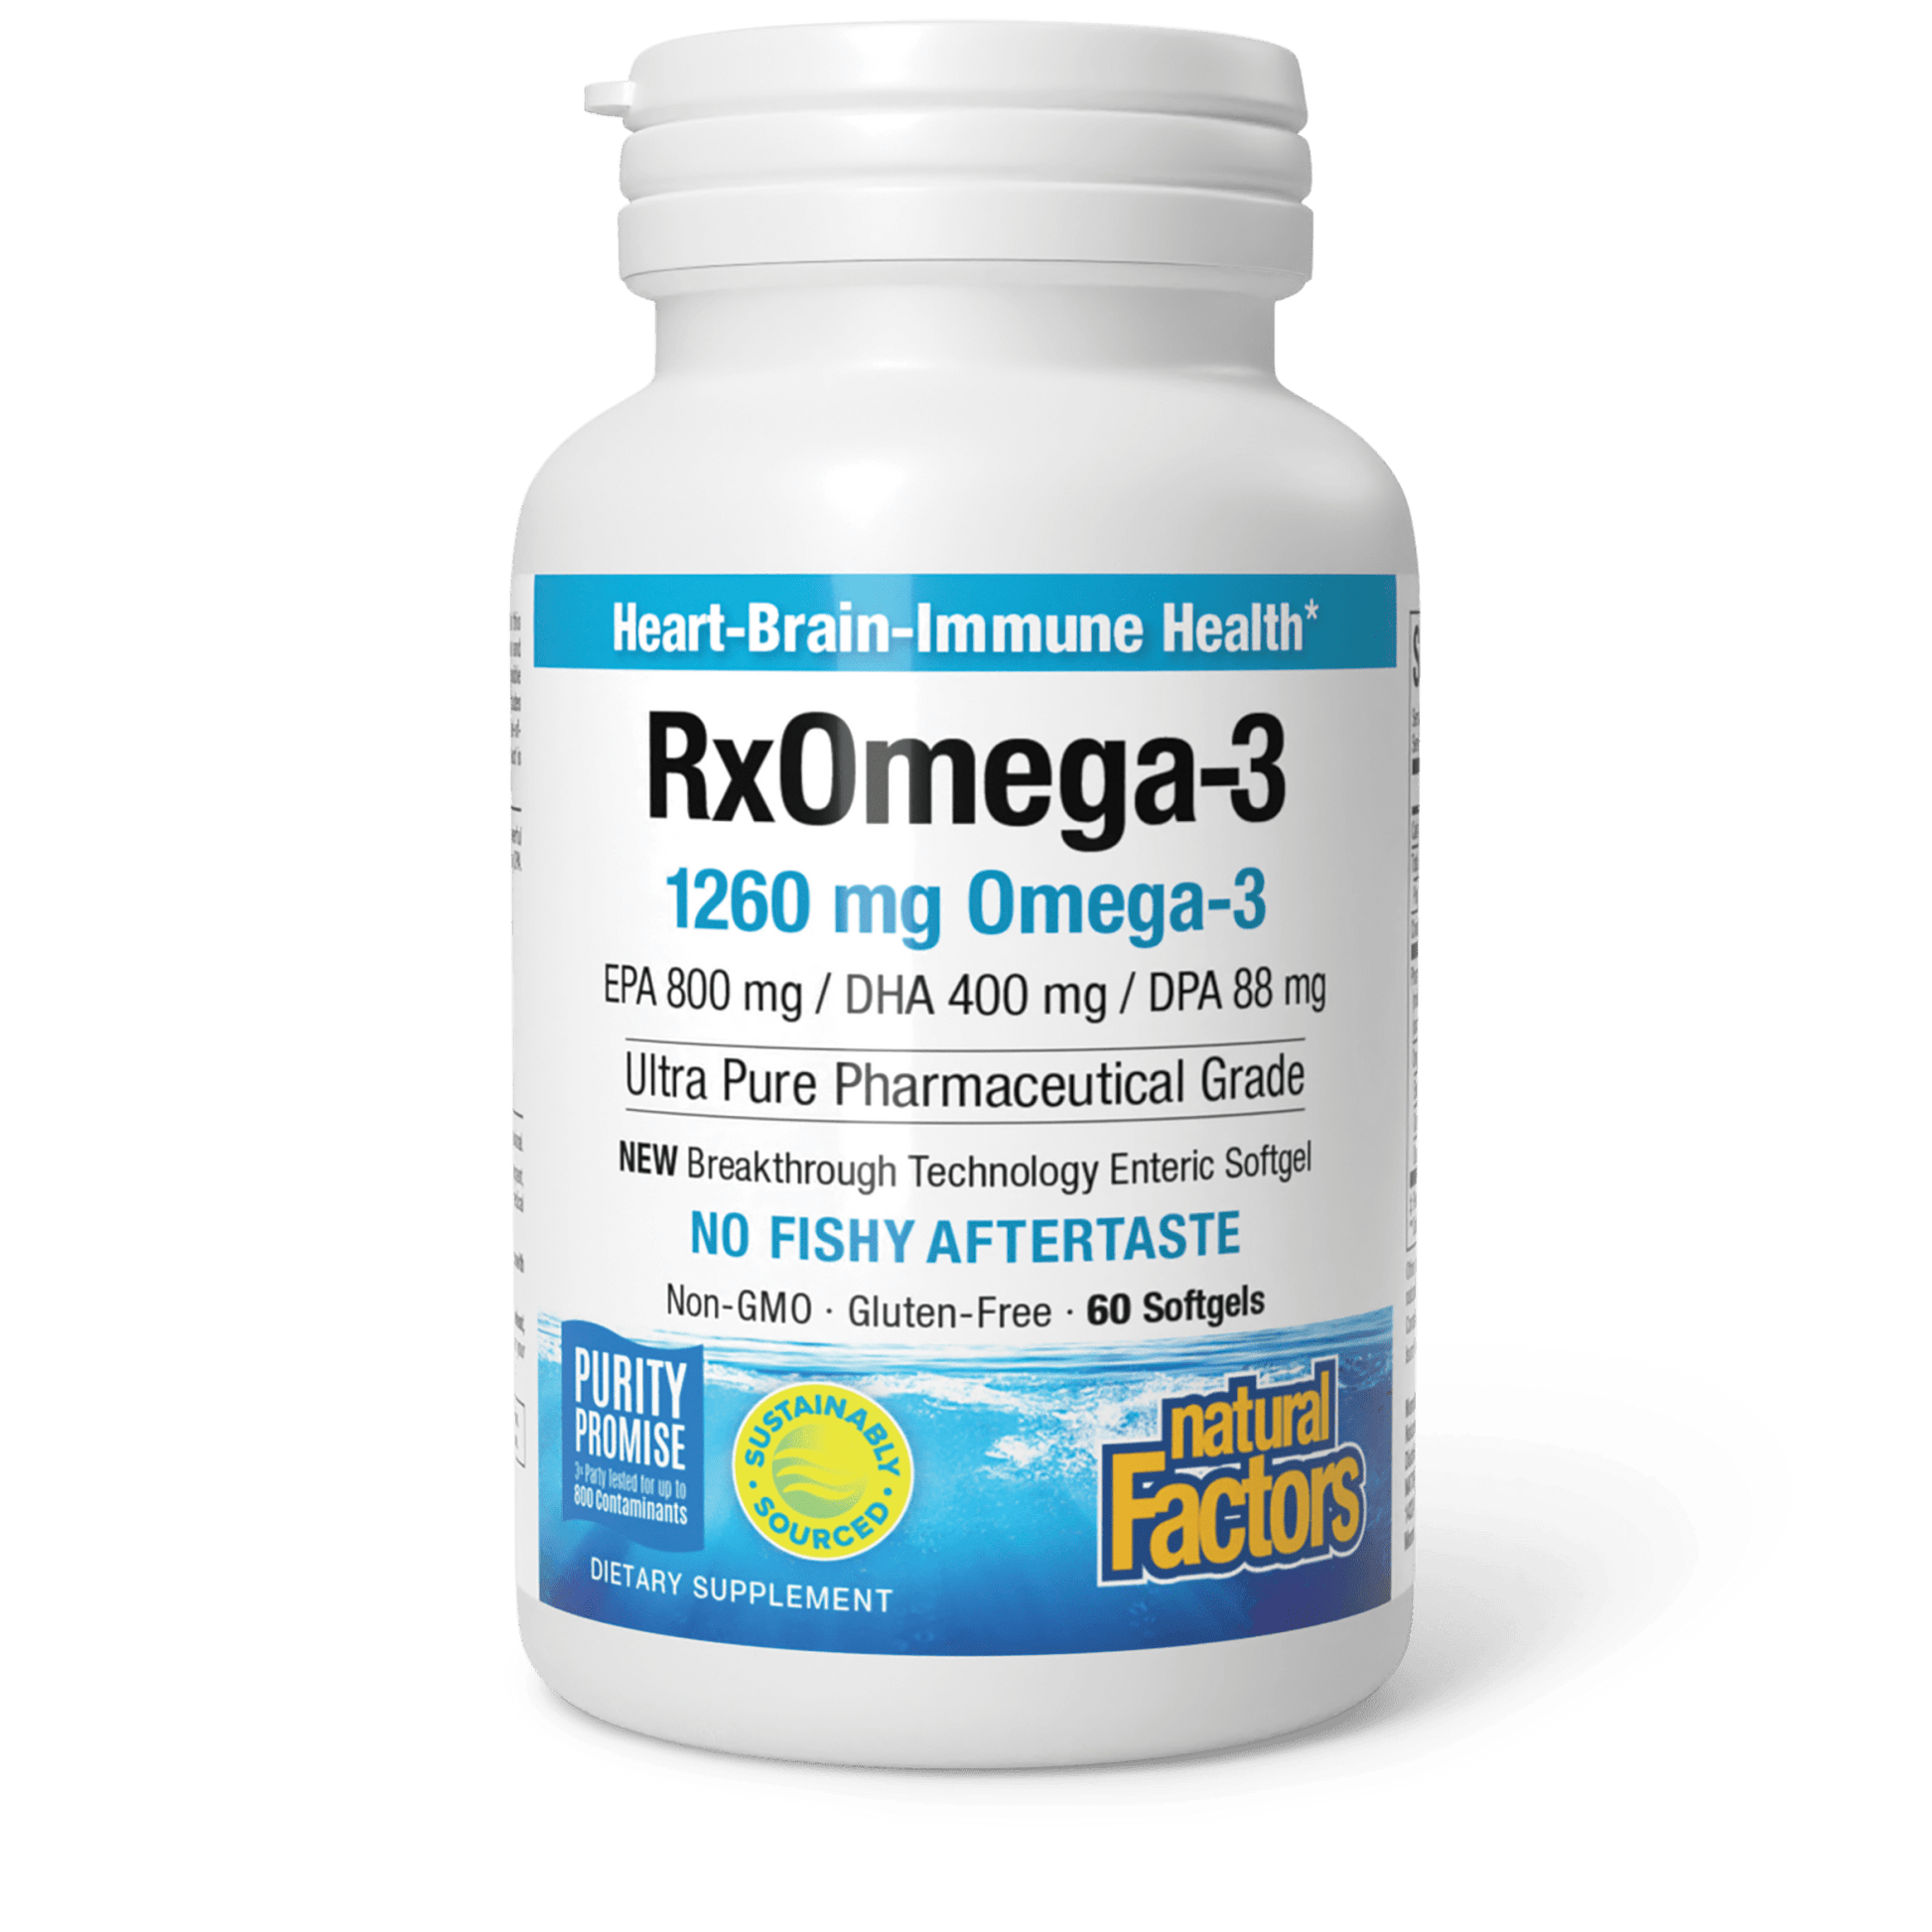 RxOmega-3 for Natural Factors |variant|hi-res|3548U